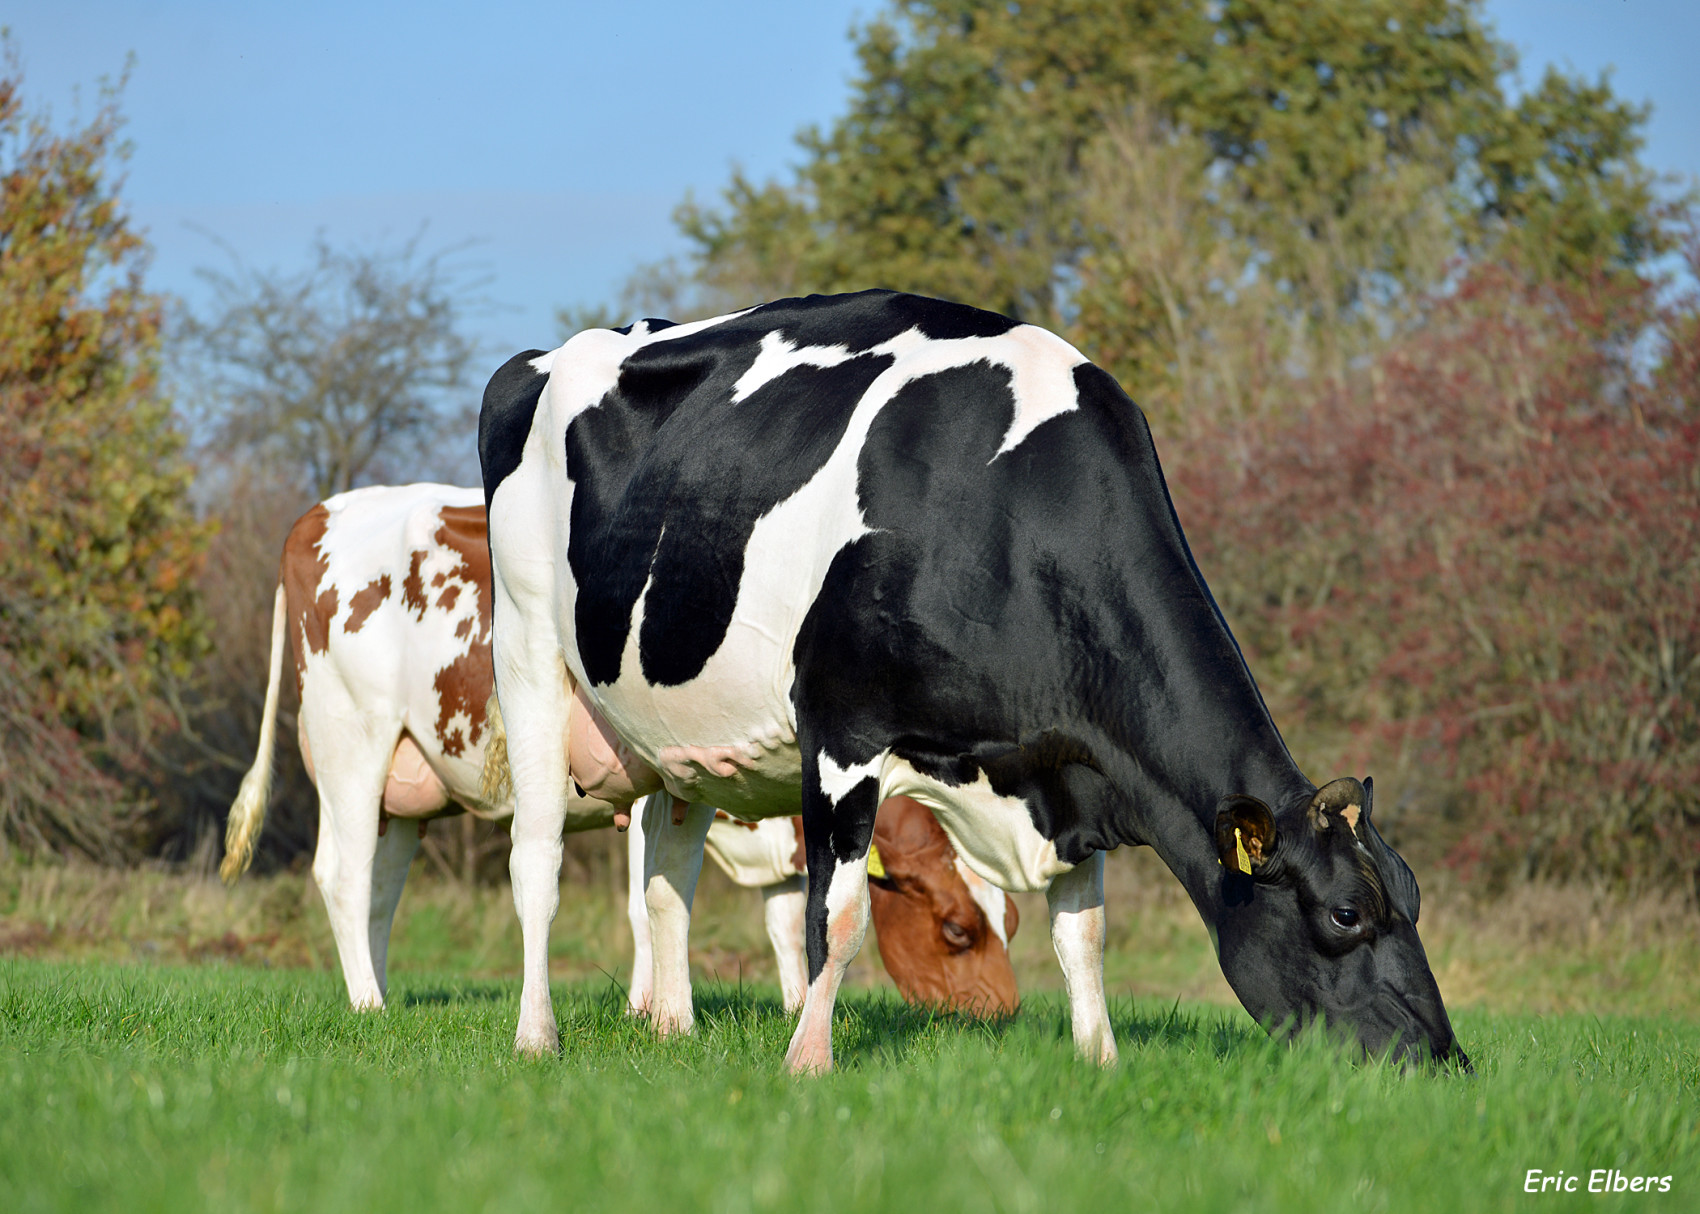 Levensproductie Nederlandse koeien stijgt tot 37.401 kg melk